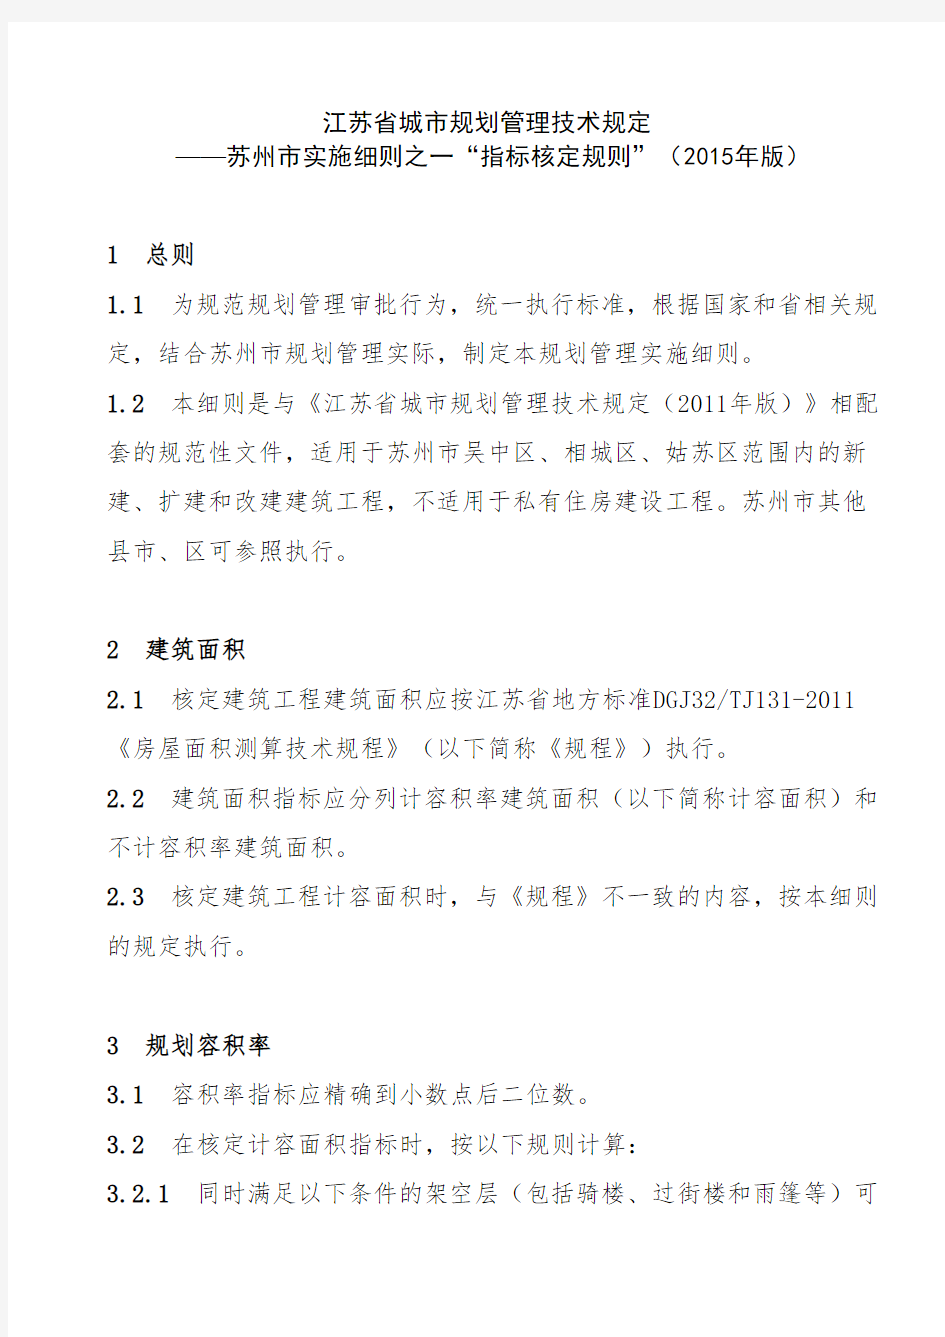 江苏省城市规划管理技术规定 ——苏州市实施细则之一“指标核定规则”(2015年版)